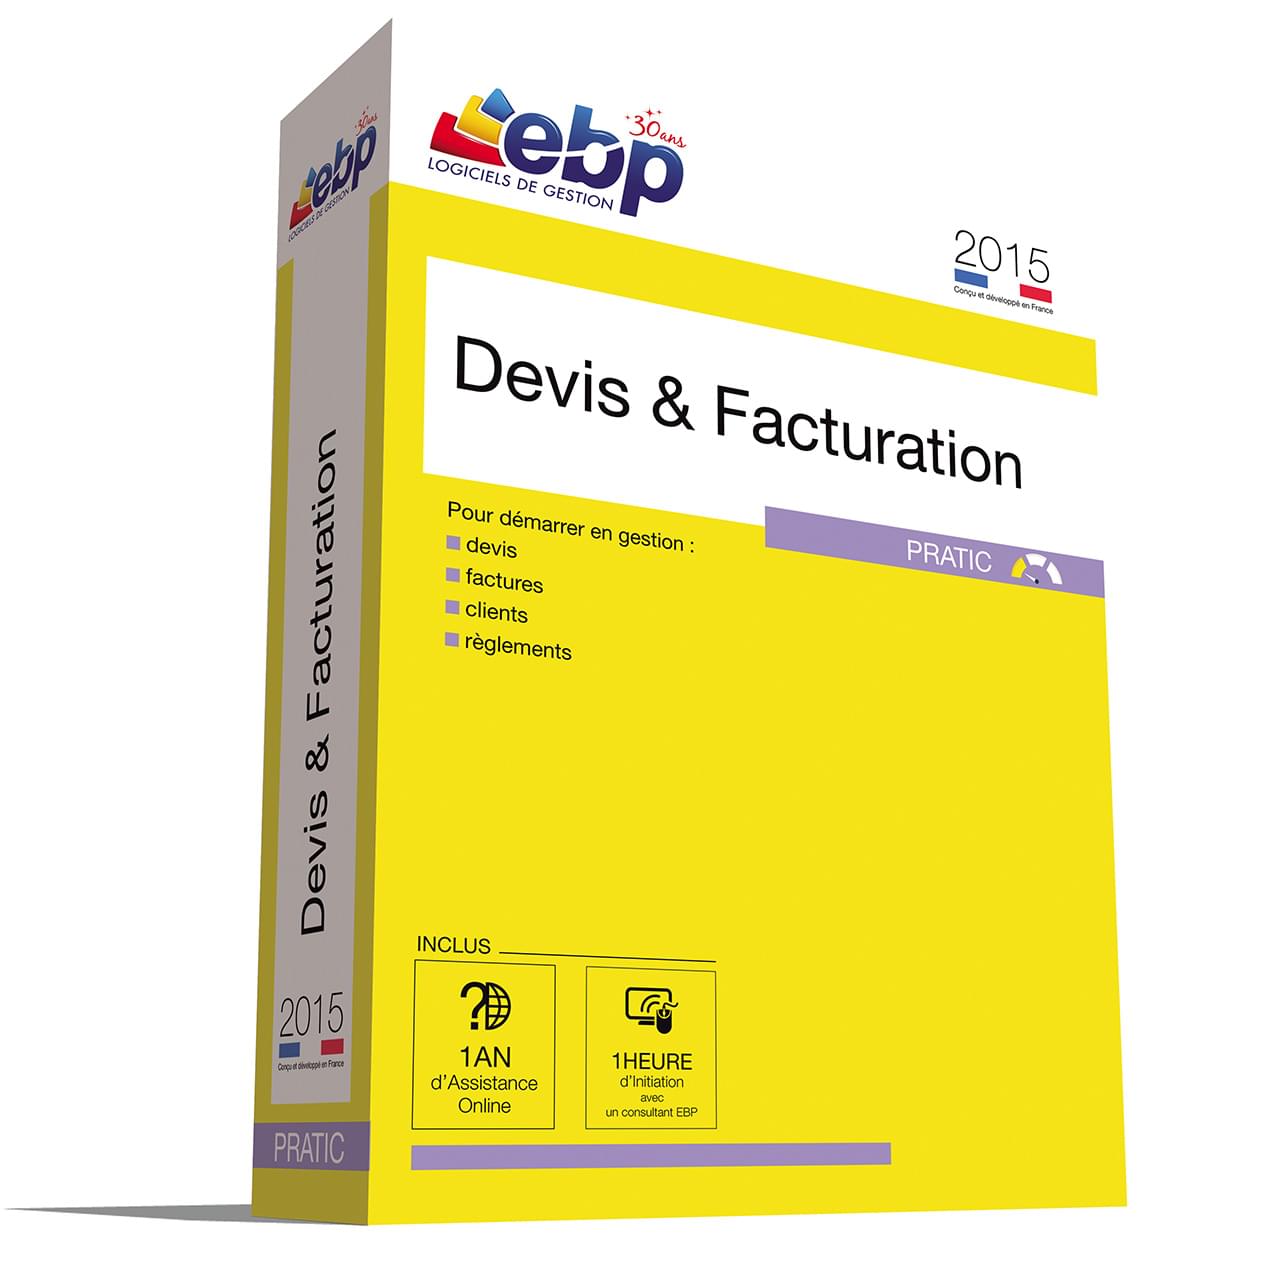 Logiciel application EBP Devis & Facturation Pratic 2015 + VIP